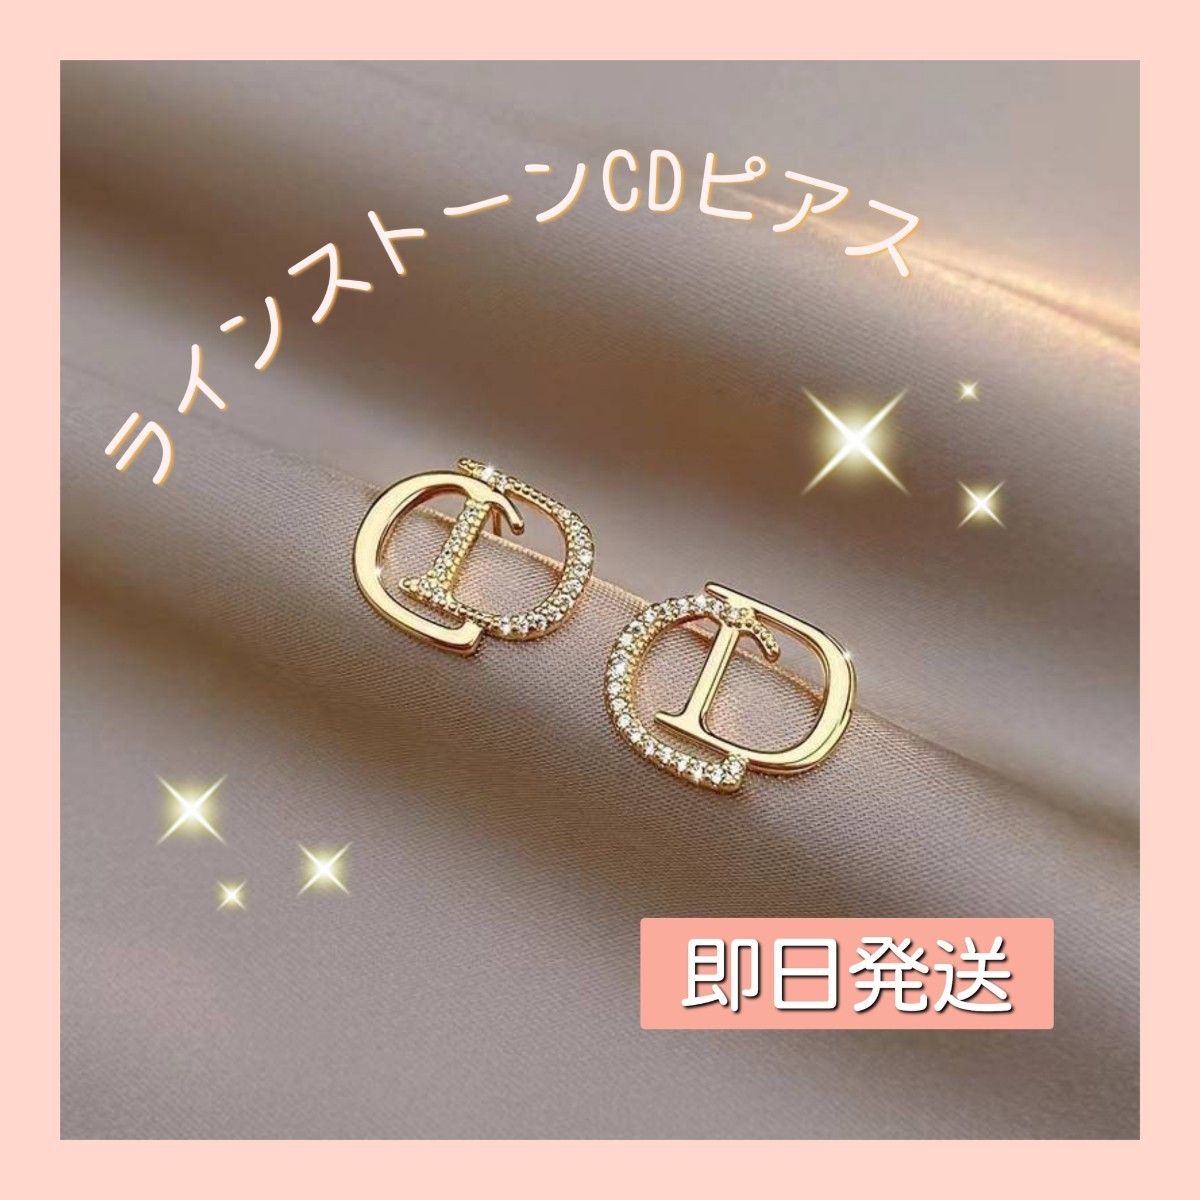 【新商品】ラインストーン CD ゴールドピアス  オシャレ ゴージャス